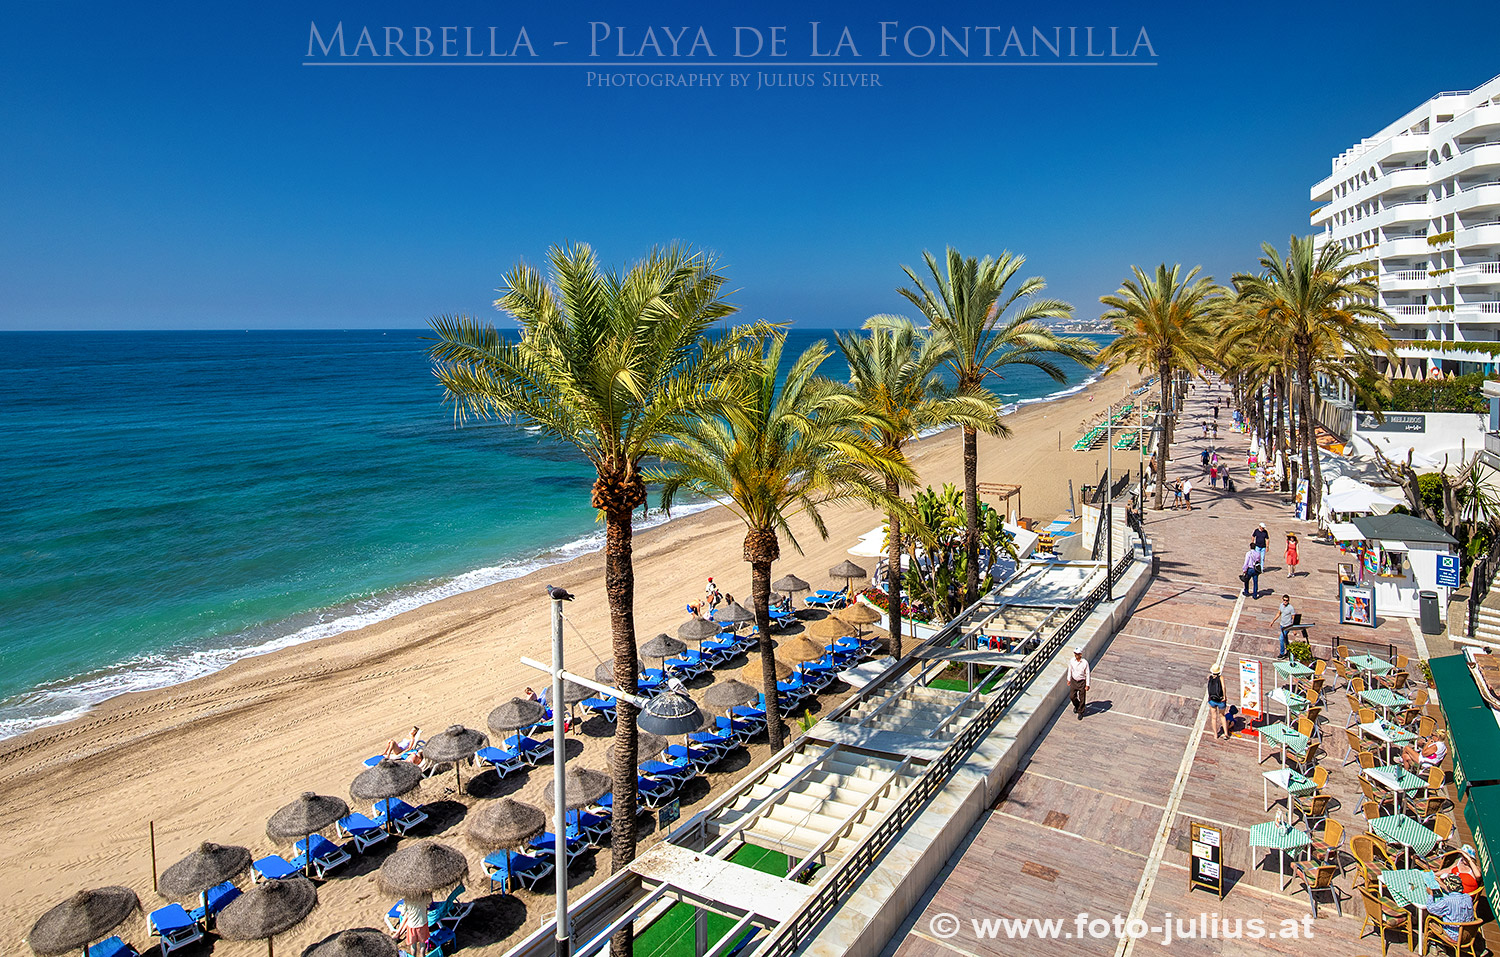 129a_Marbella_Playa_La_Fontanilla.jpg, 711kB